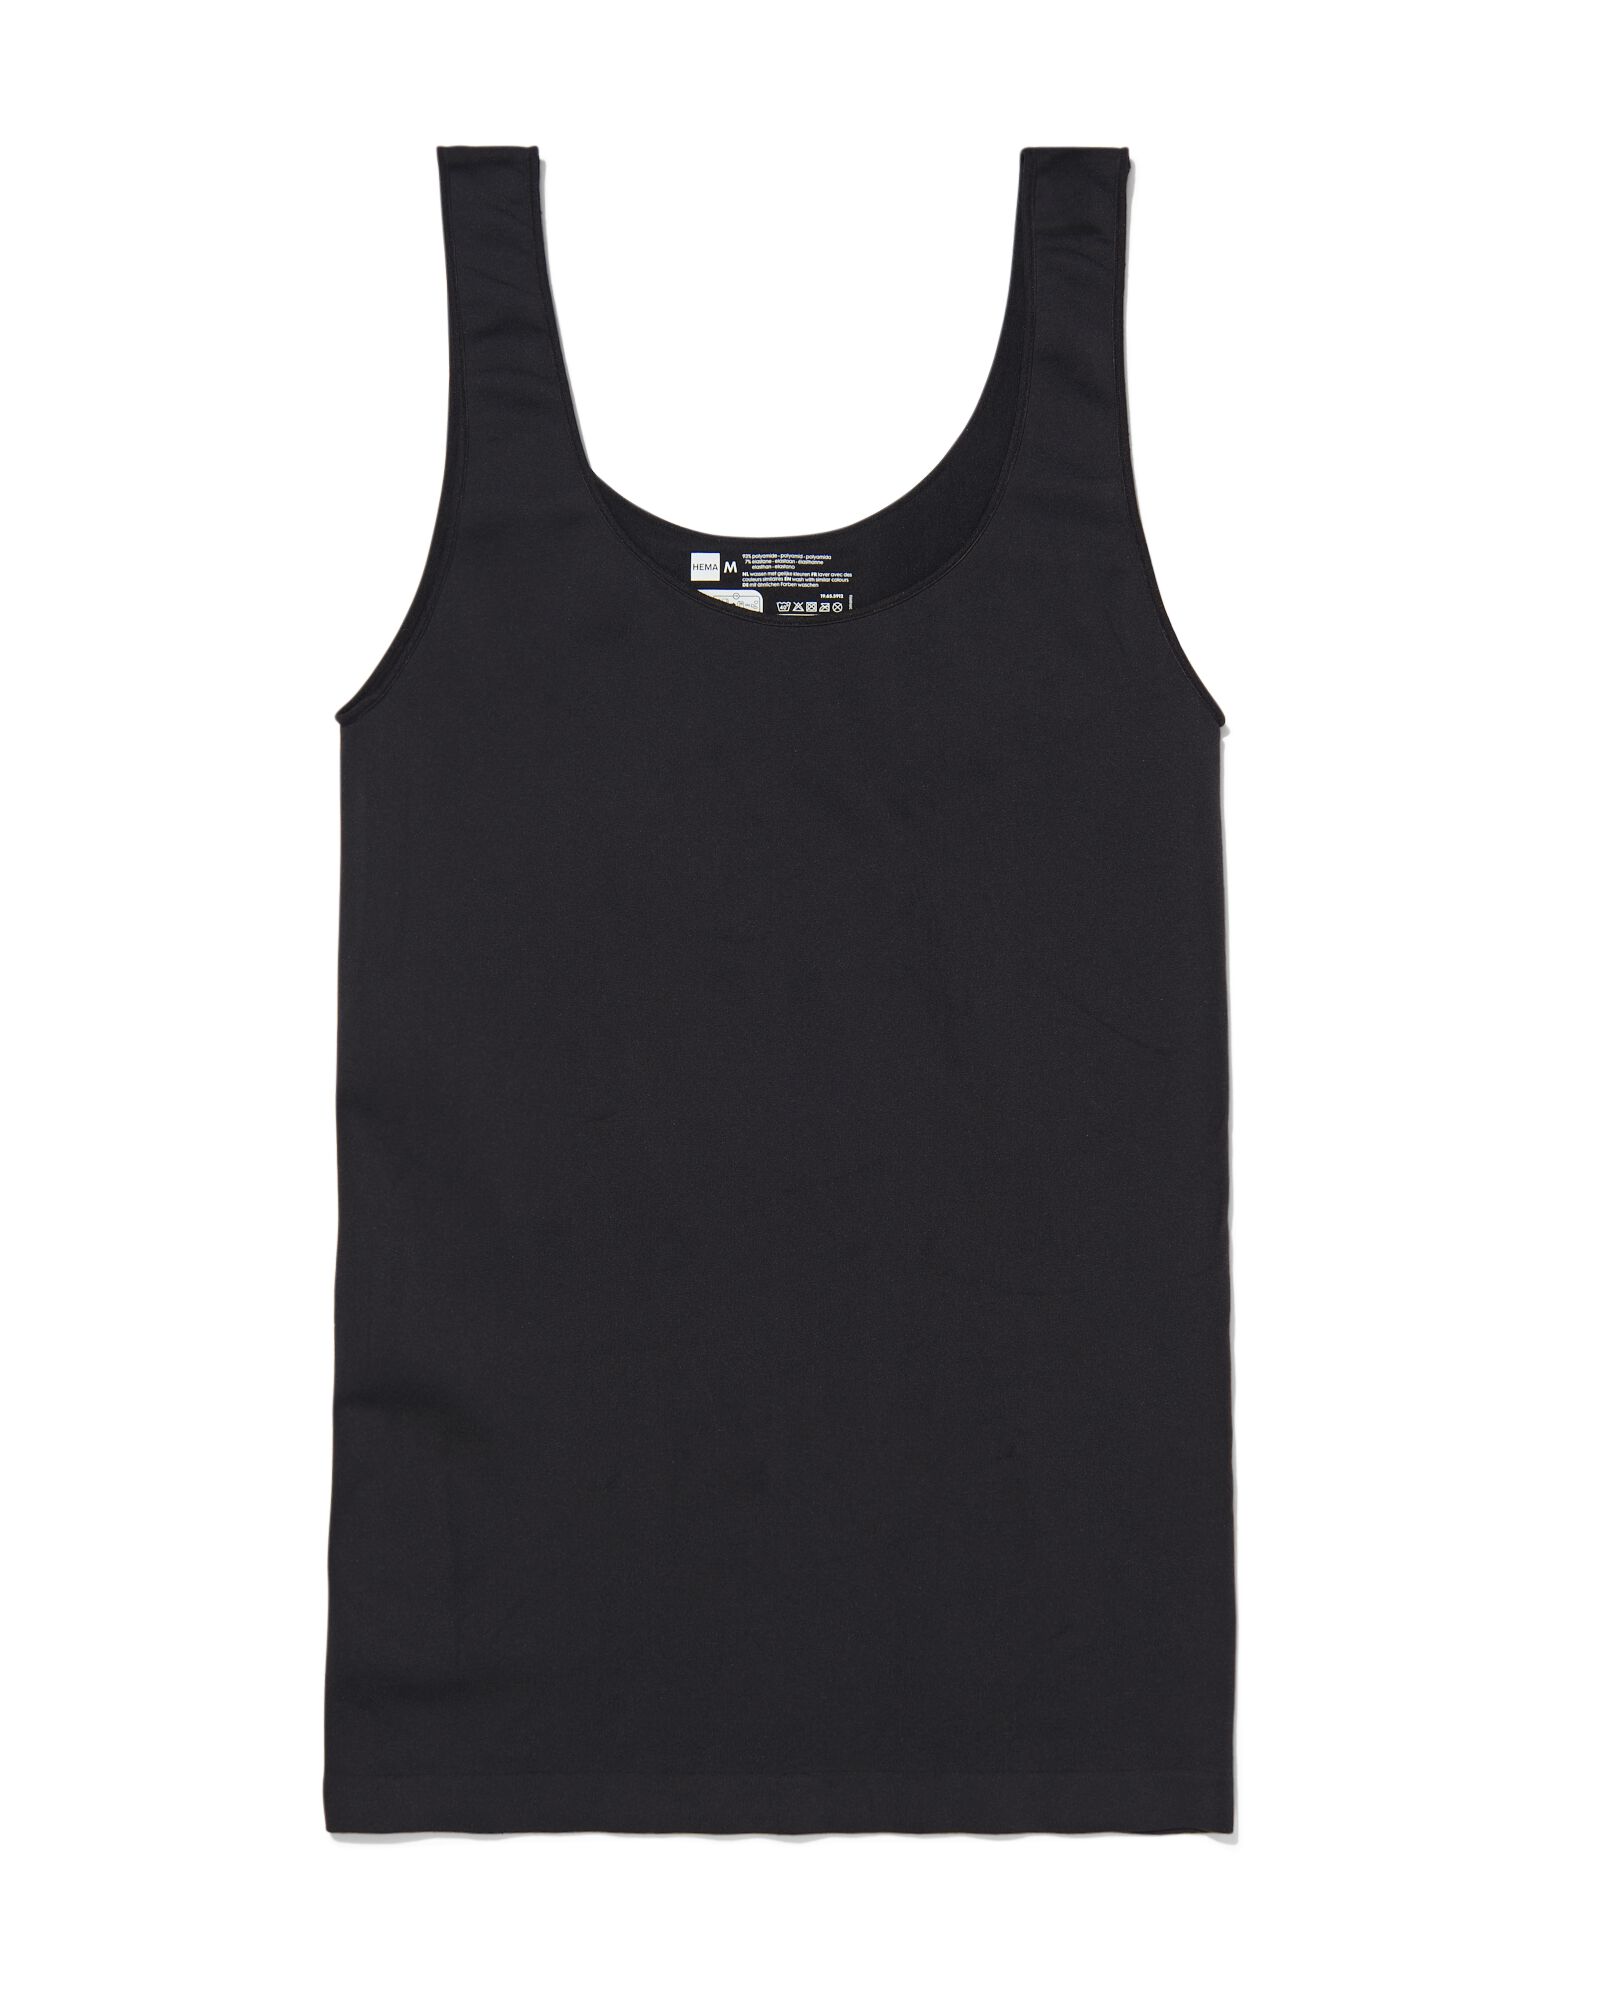 dameshemd zwart S - 19655911 - HEMA